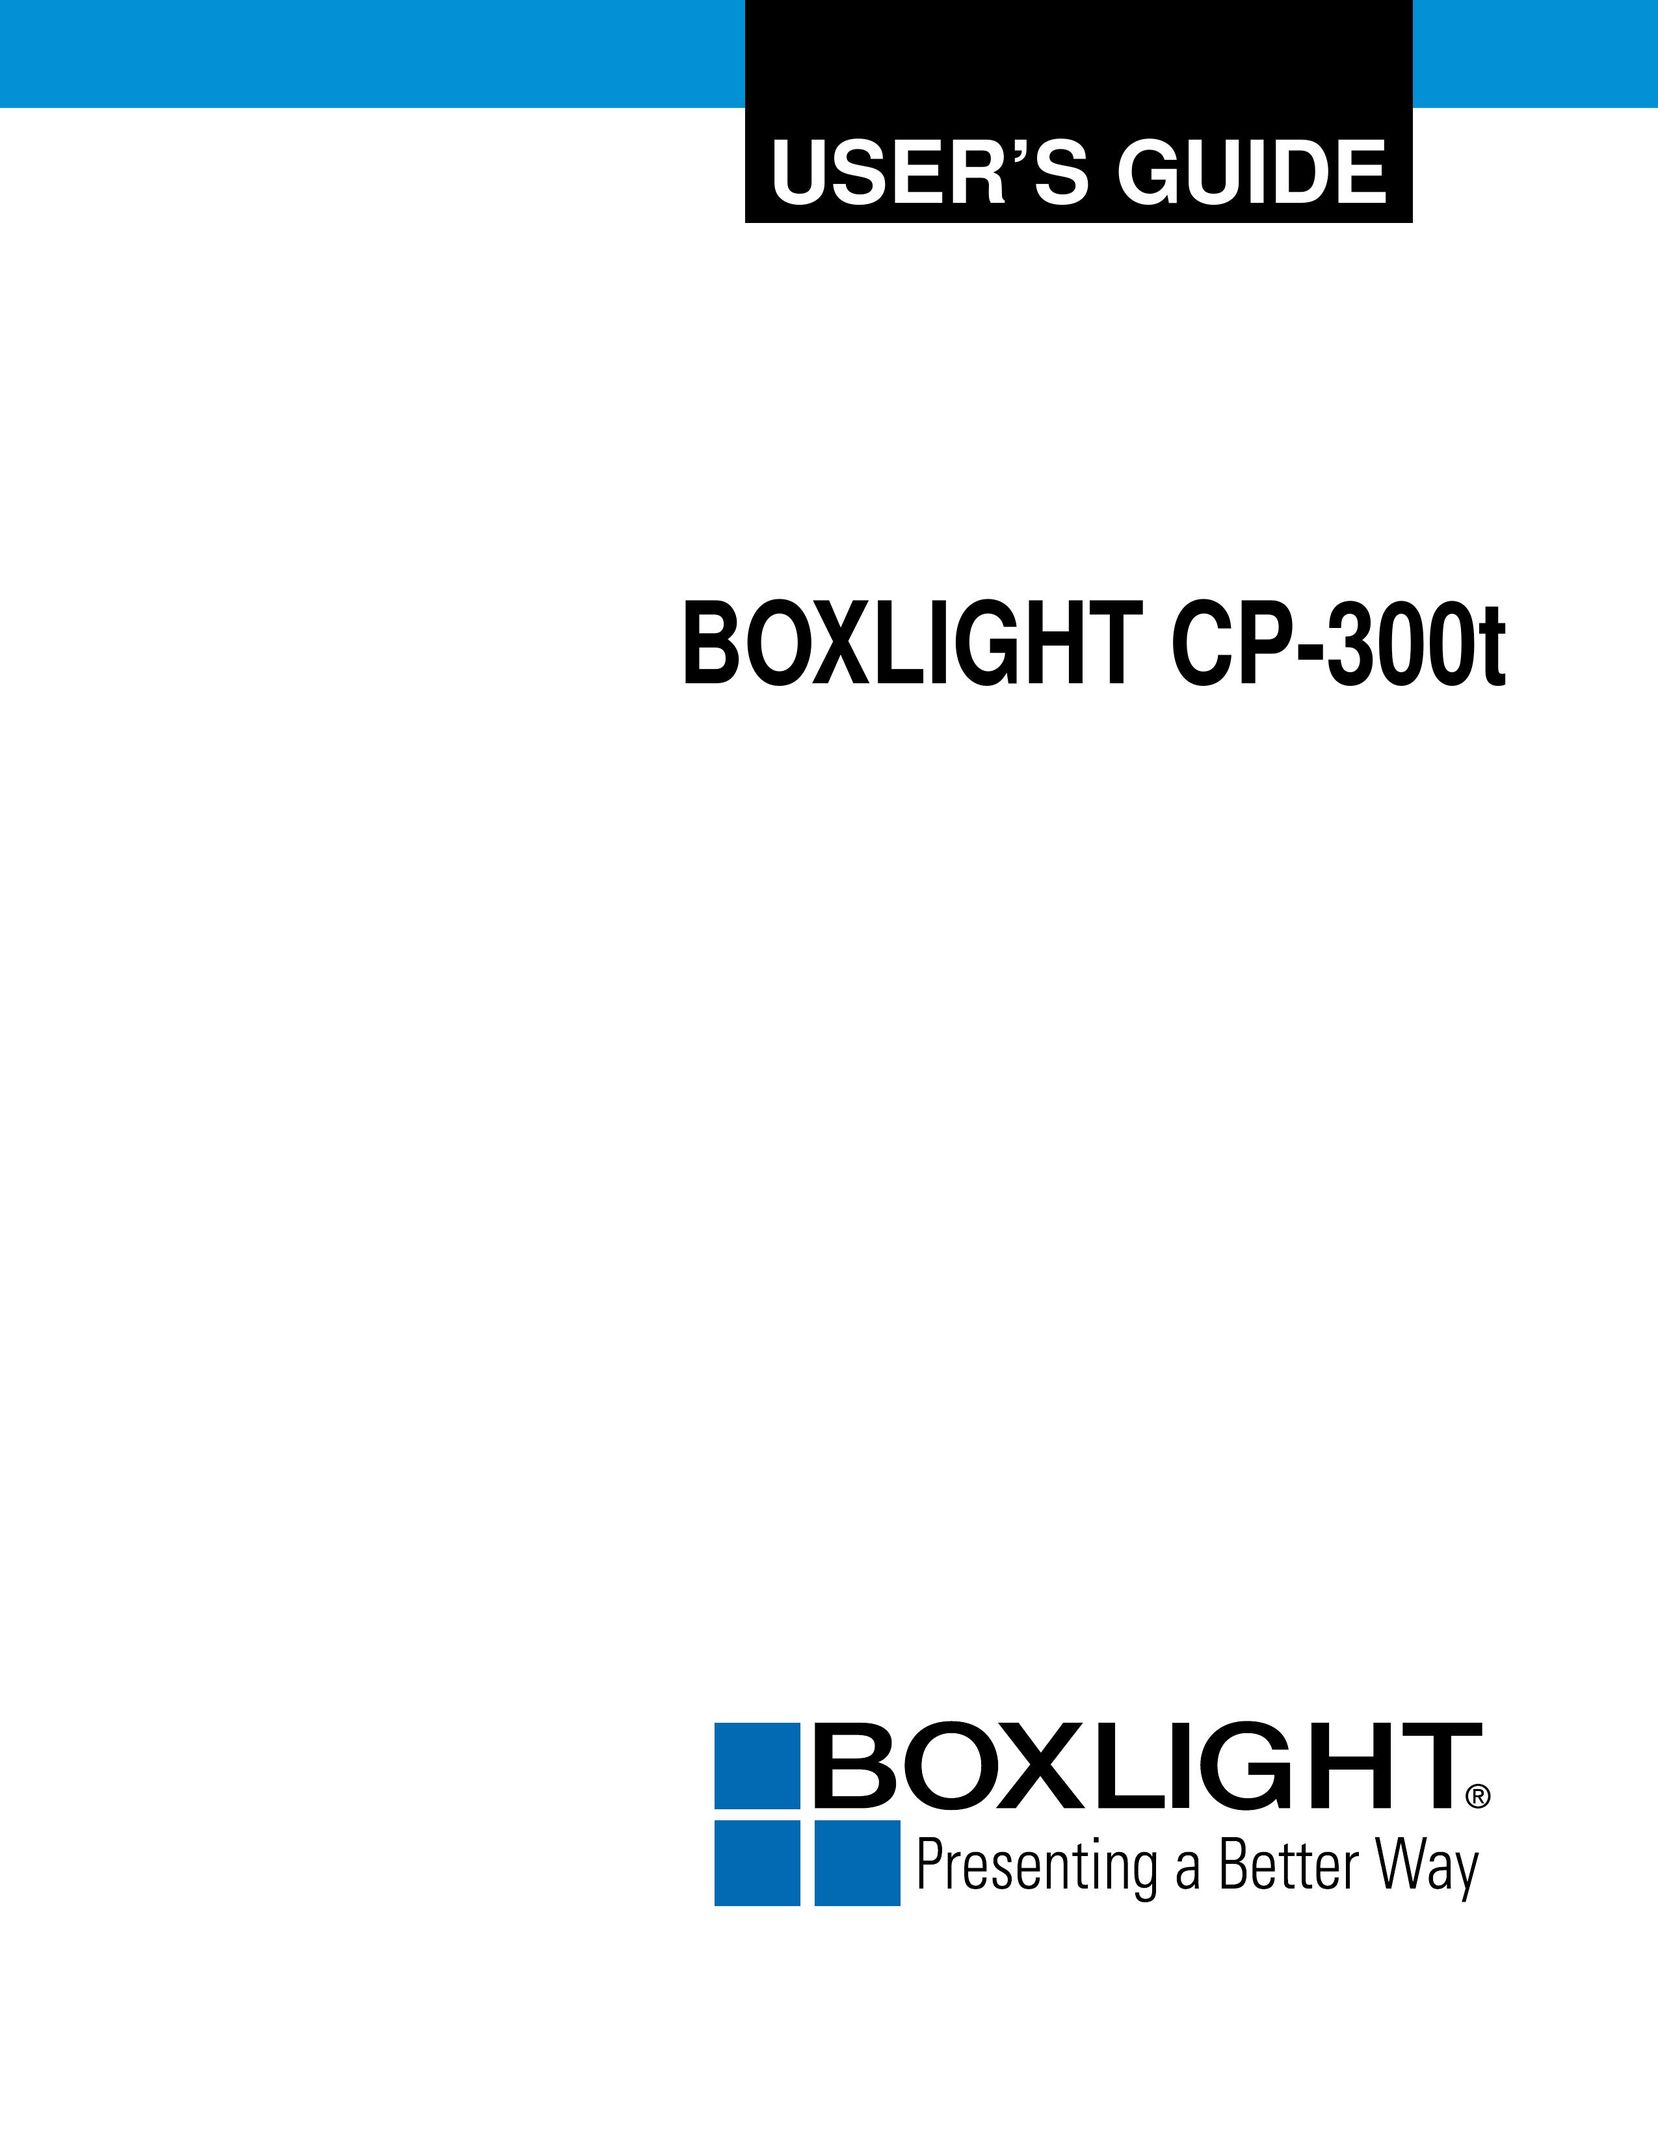 BOXLIGHT CP-300T Projector User Manual